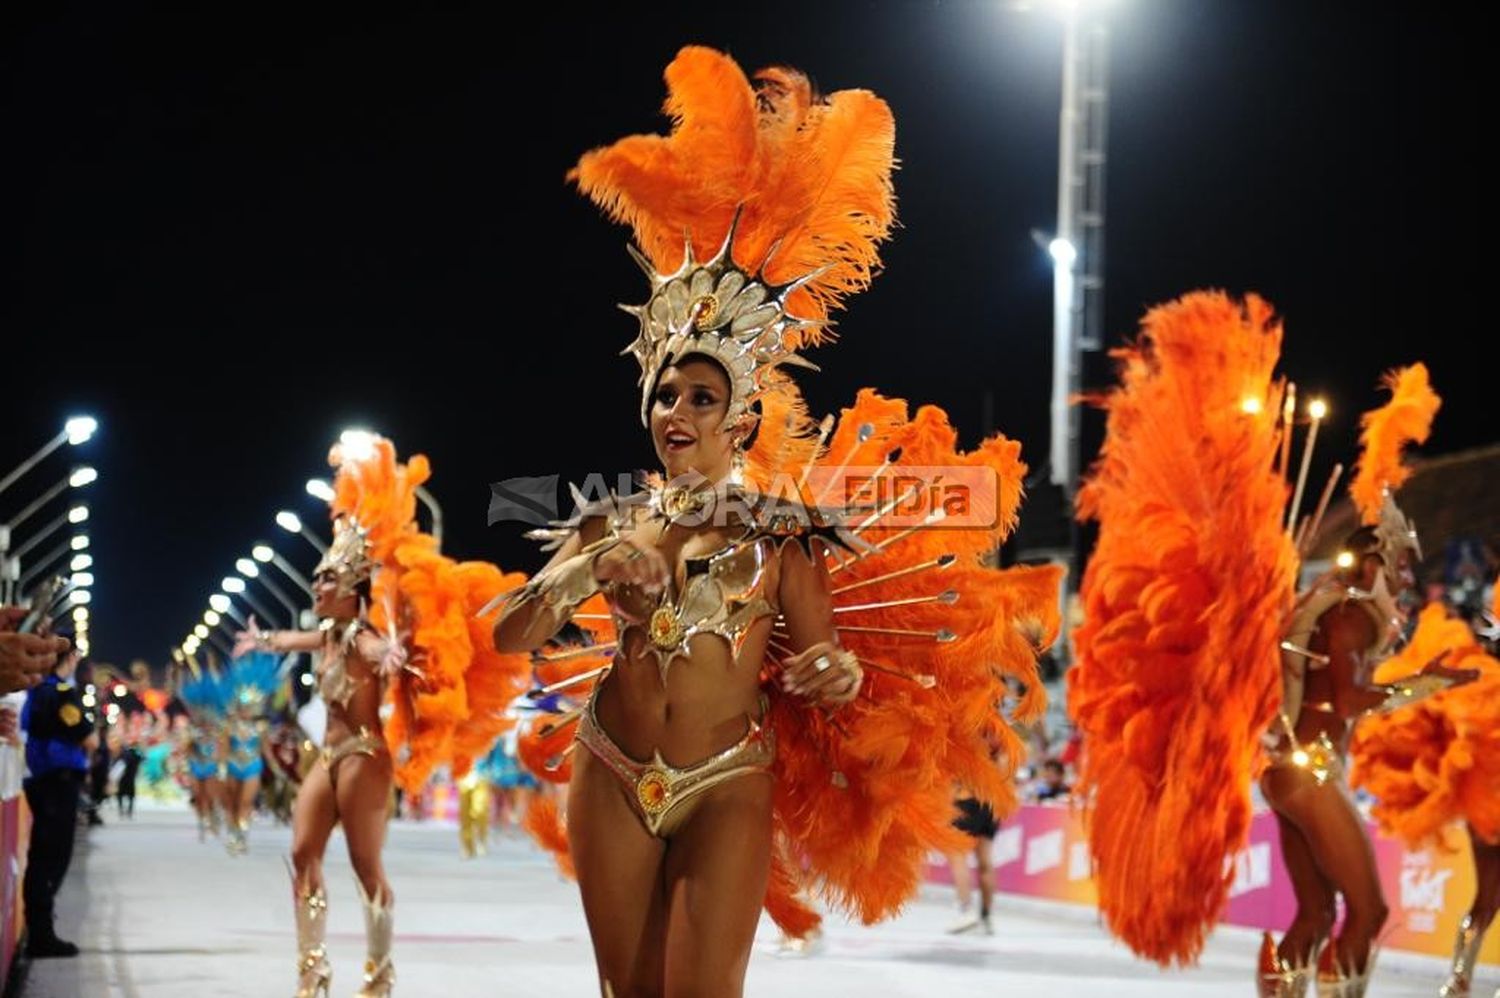 Quiénes fueron los jurados que evaluaron a las comparsas la segunda noche de Carnaval